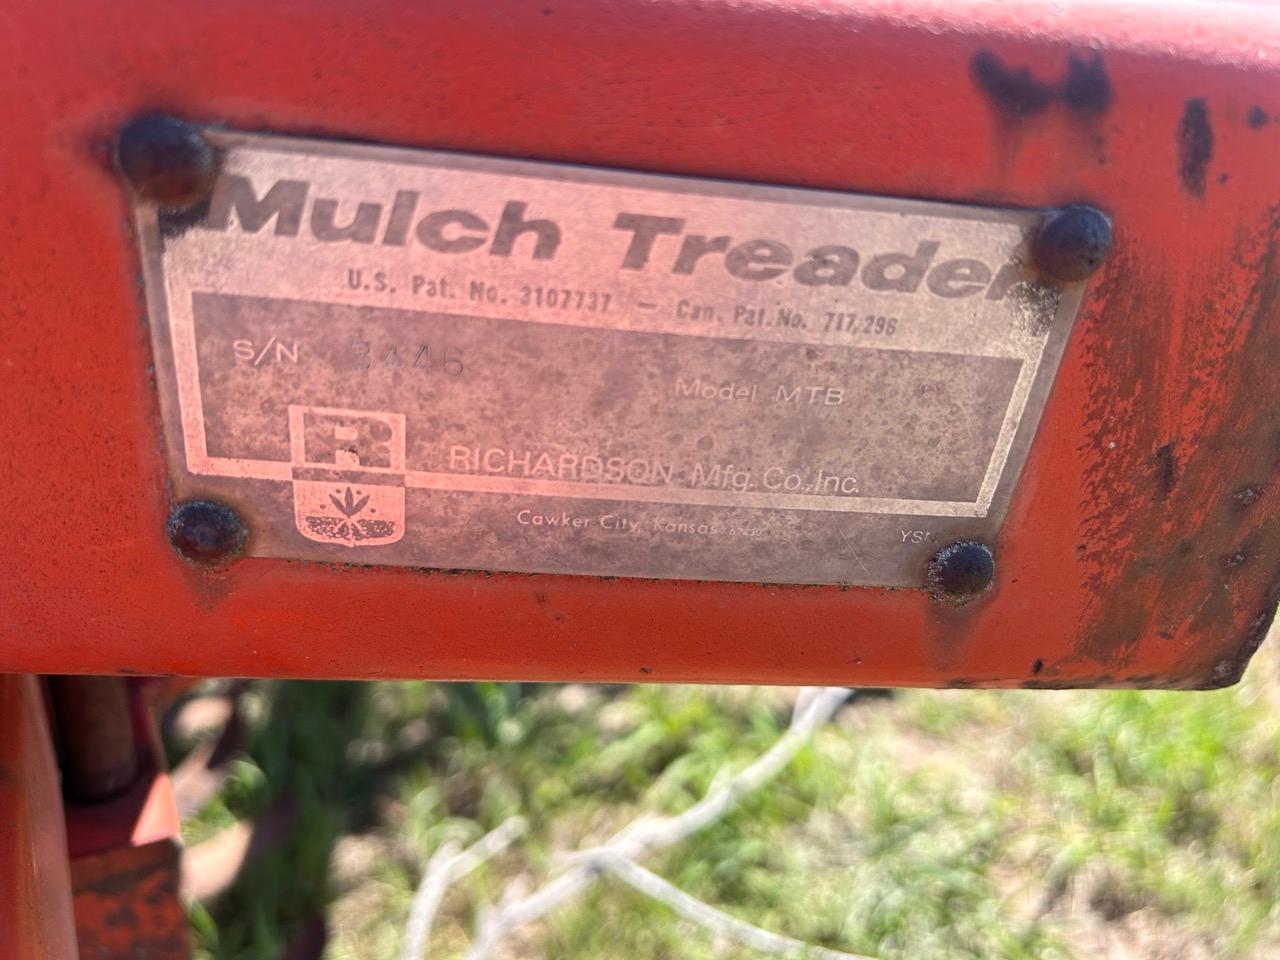 Richardson Mulch Treader